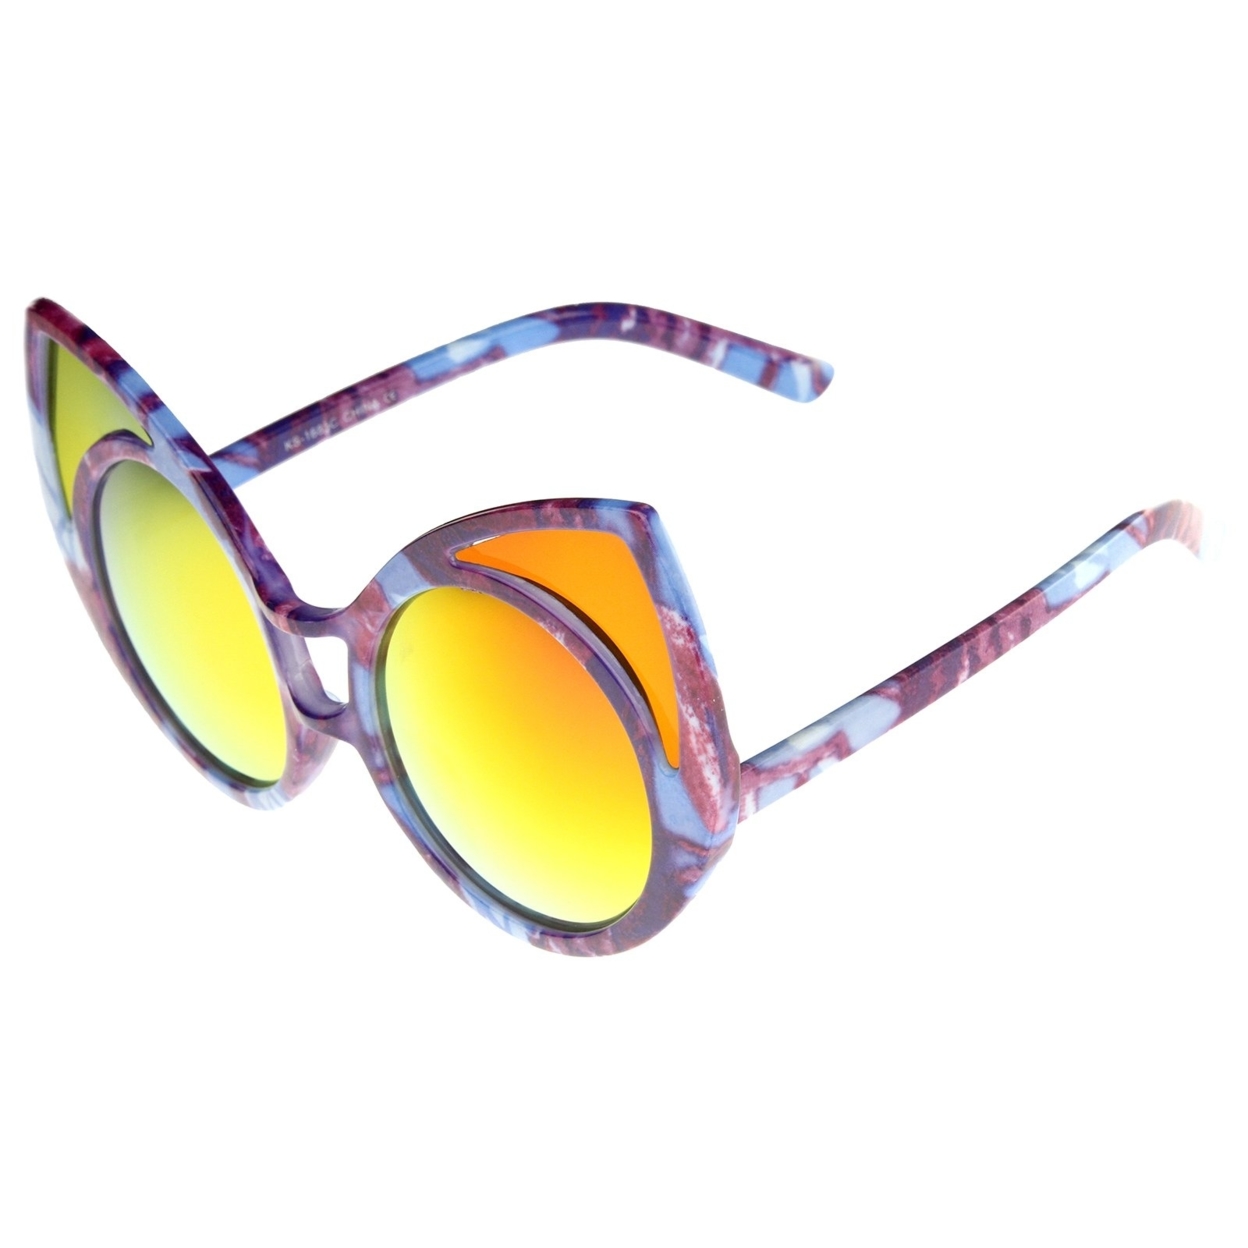 Women's Oversize Colored Frame Mirror Lens Cat Eye Sunglasses 52mm - Blue-White / Blue Mirror